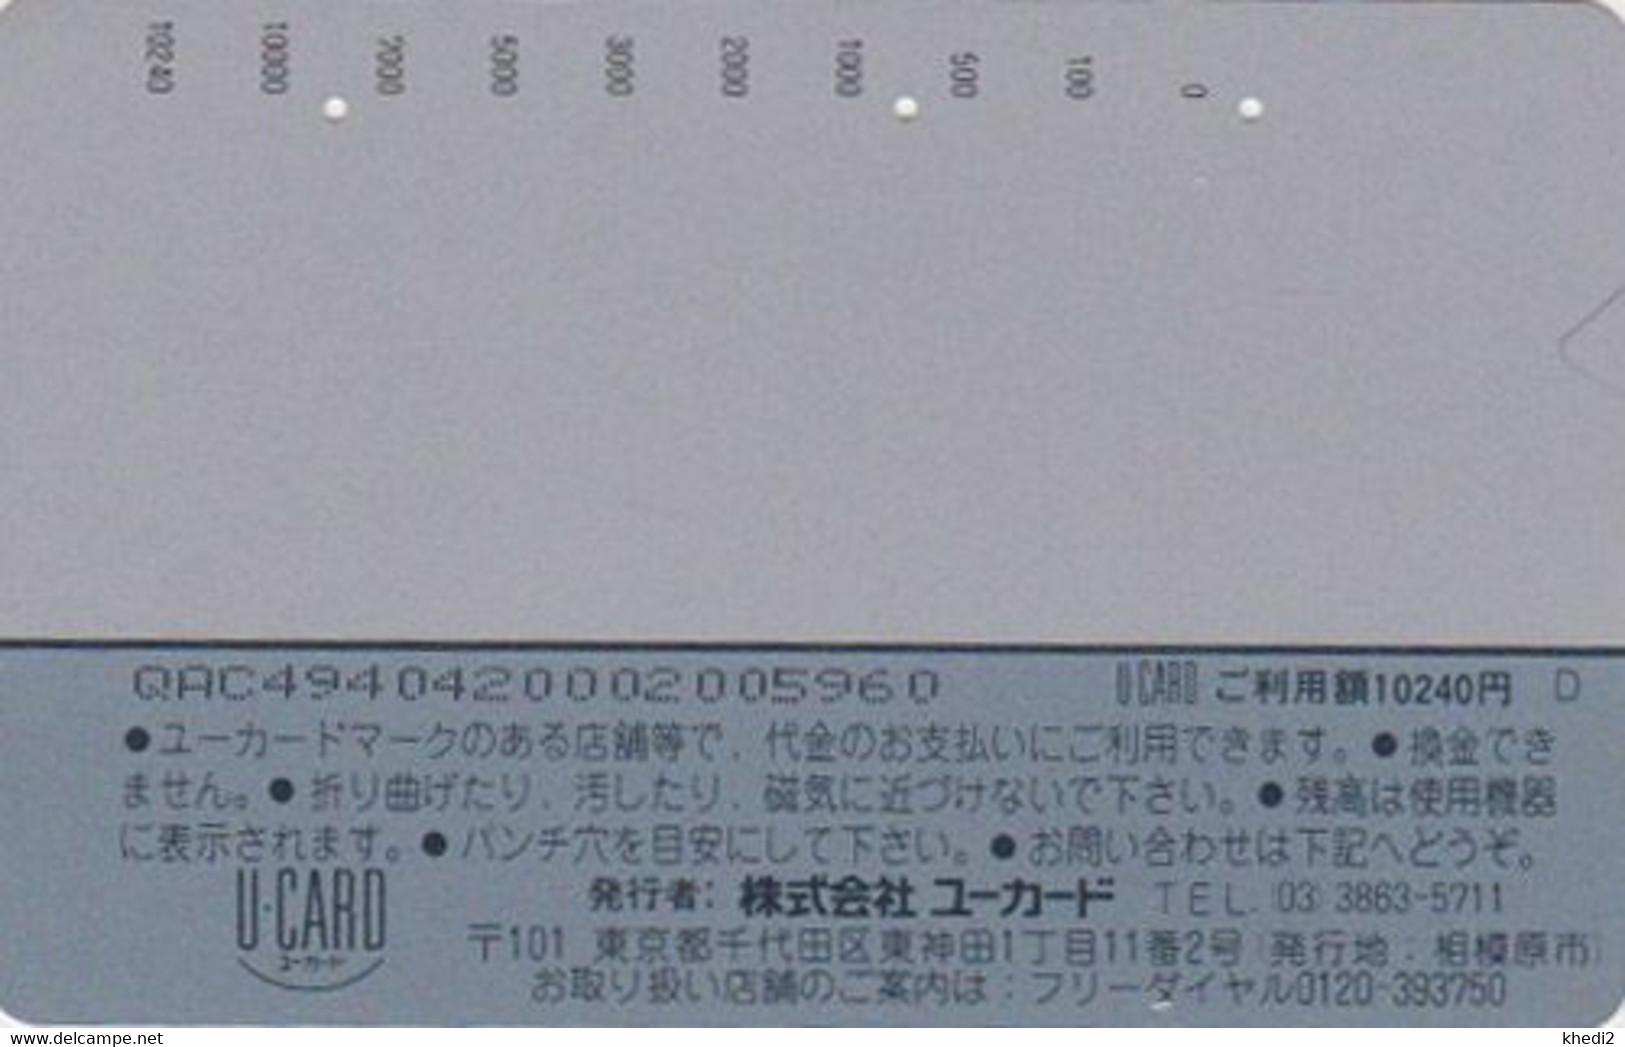 Carte Prépayée JAPON - MCDONALD'S - SERIE DESSIN - Enfants Jouet Lapin 10.000 YENS / A - JAPAN Prepaid U Card - 184 - Alimentation